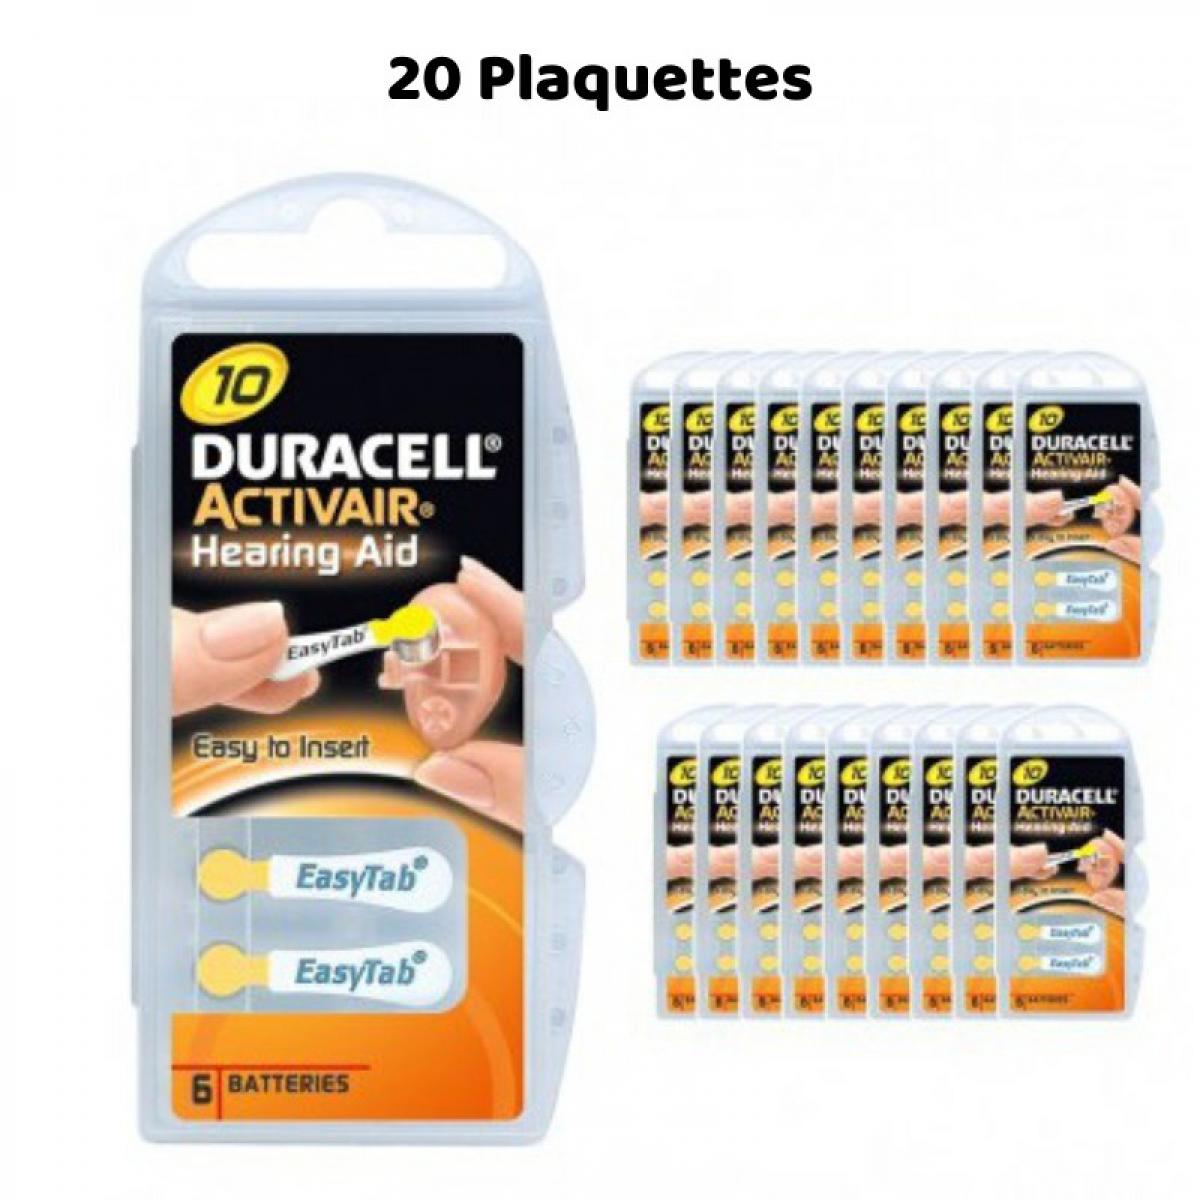 Duracell - Piles Auditives Duracell Activair 10, 20 Plaquettes - Piles rechargeables